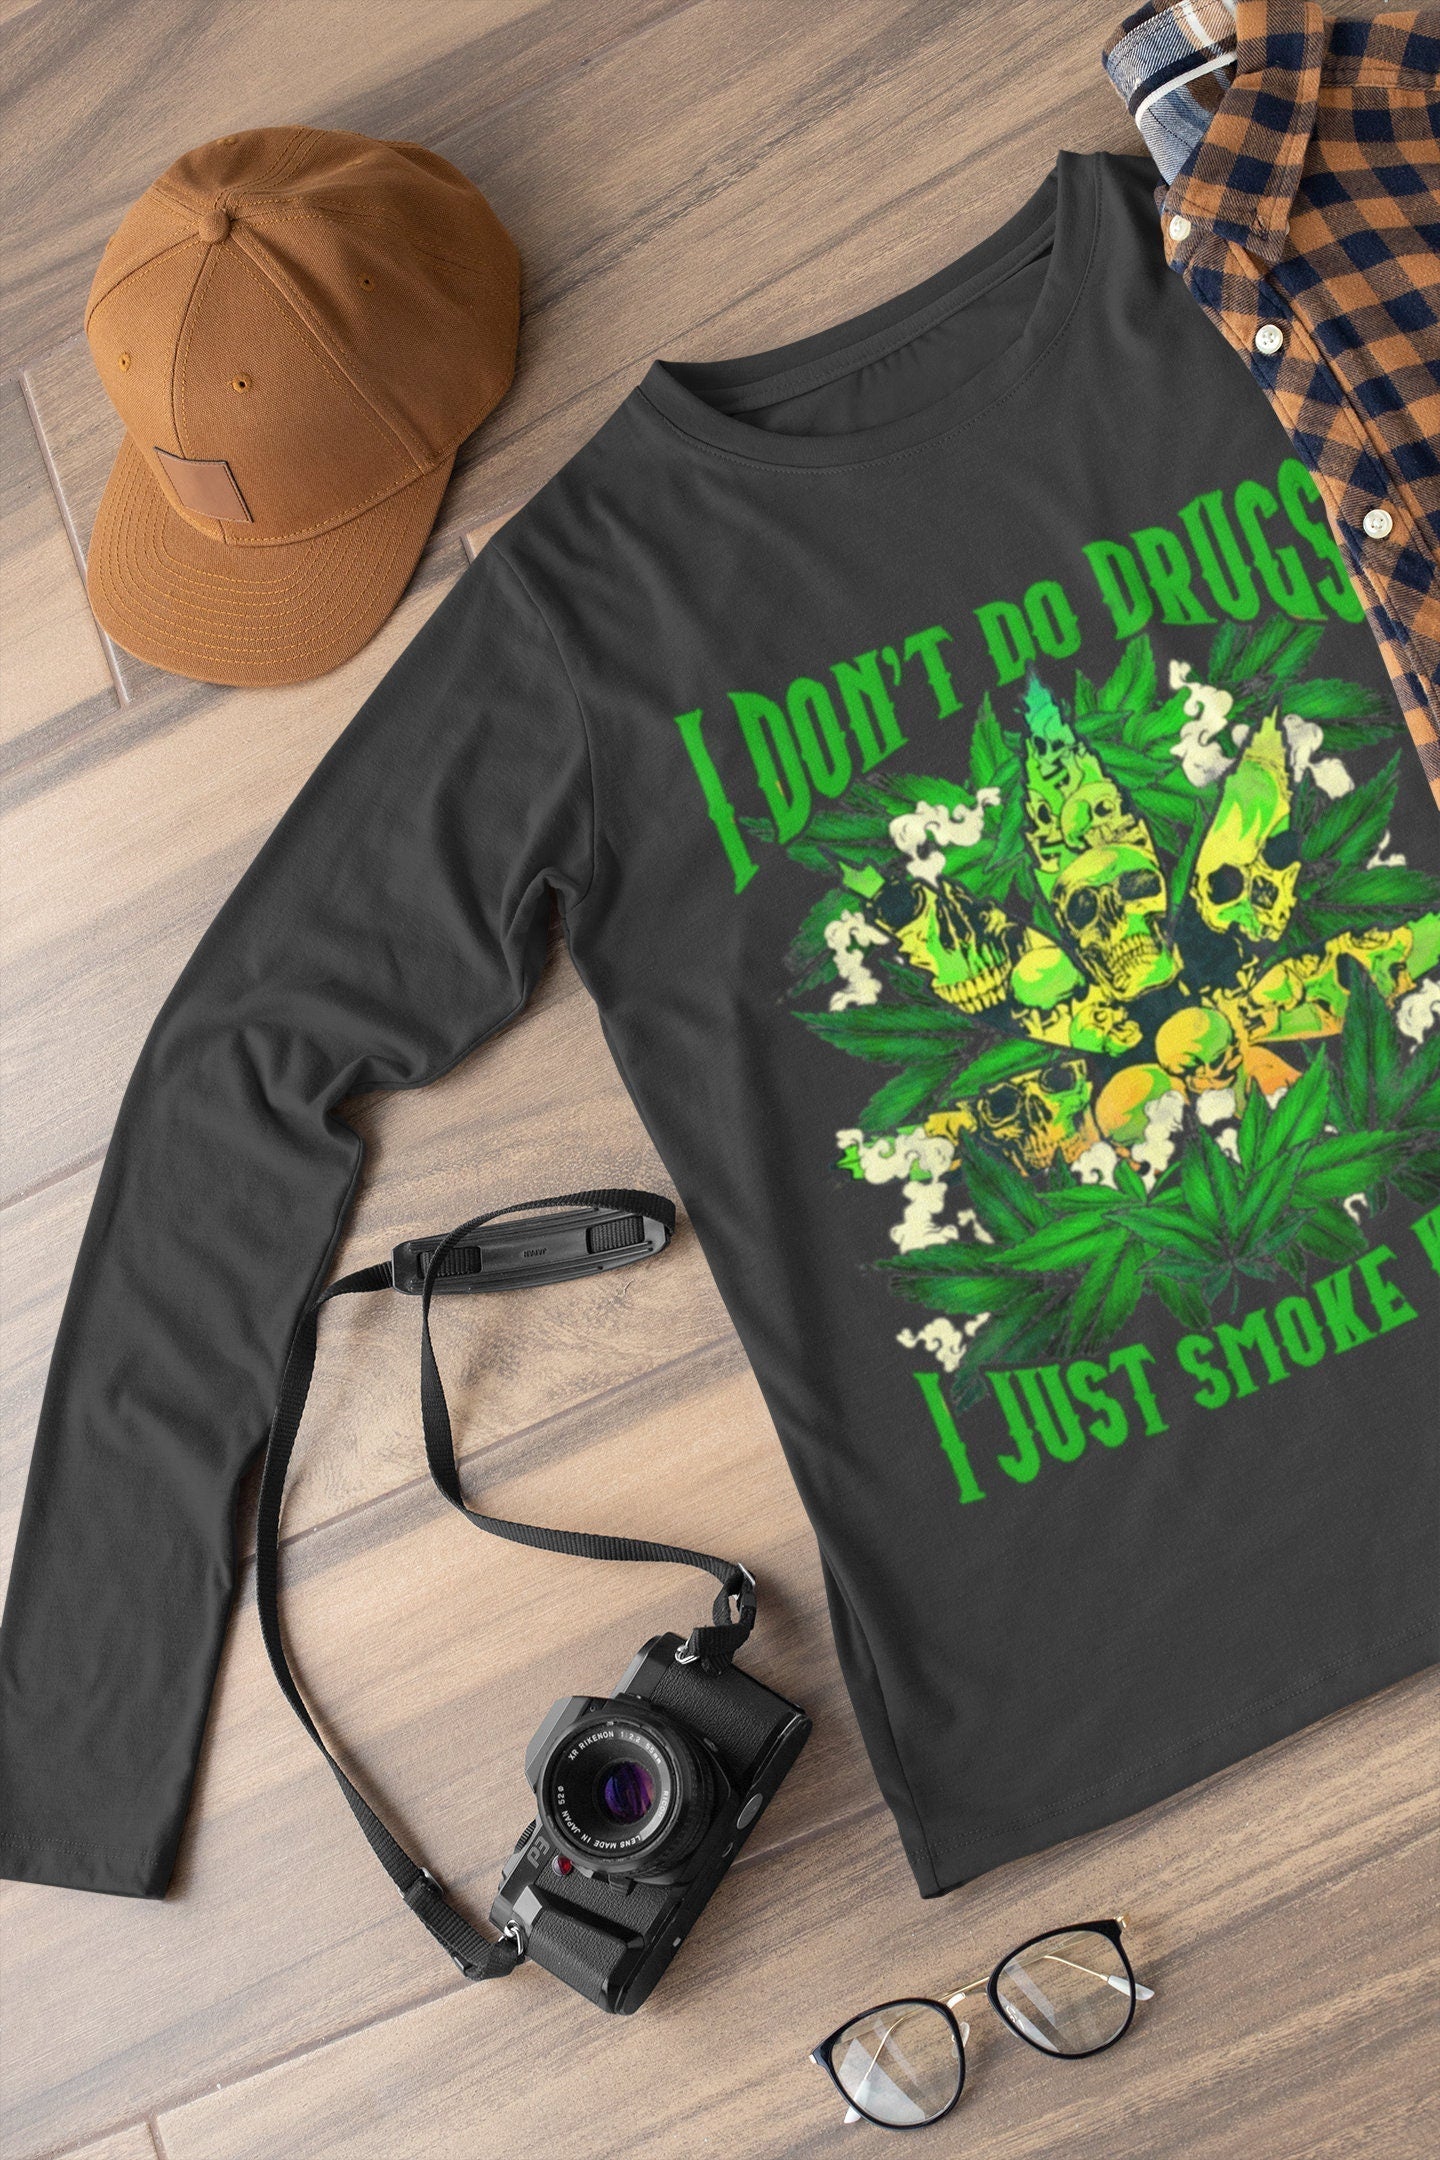 I Don't Do Drugs I Just Smoke Weed, Funny Stoner Shirt